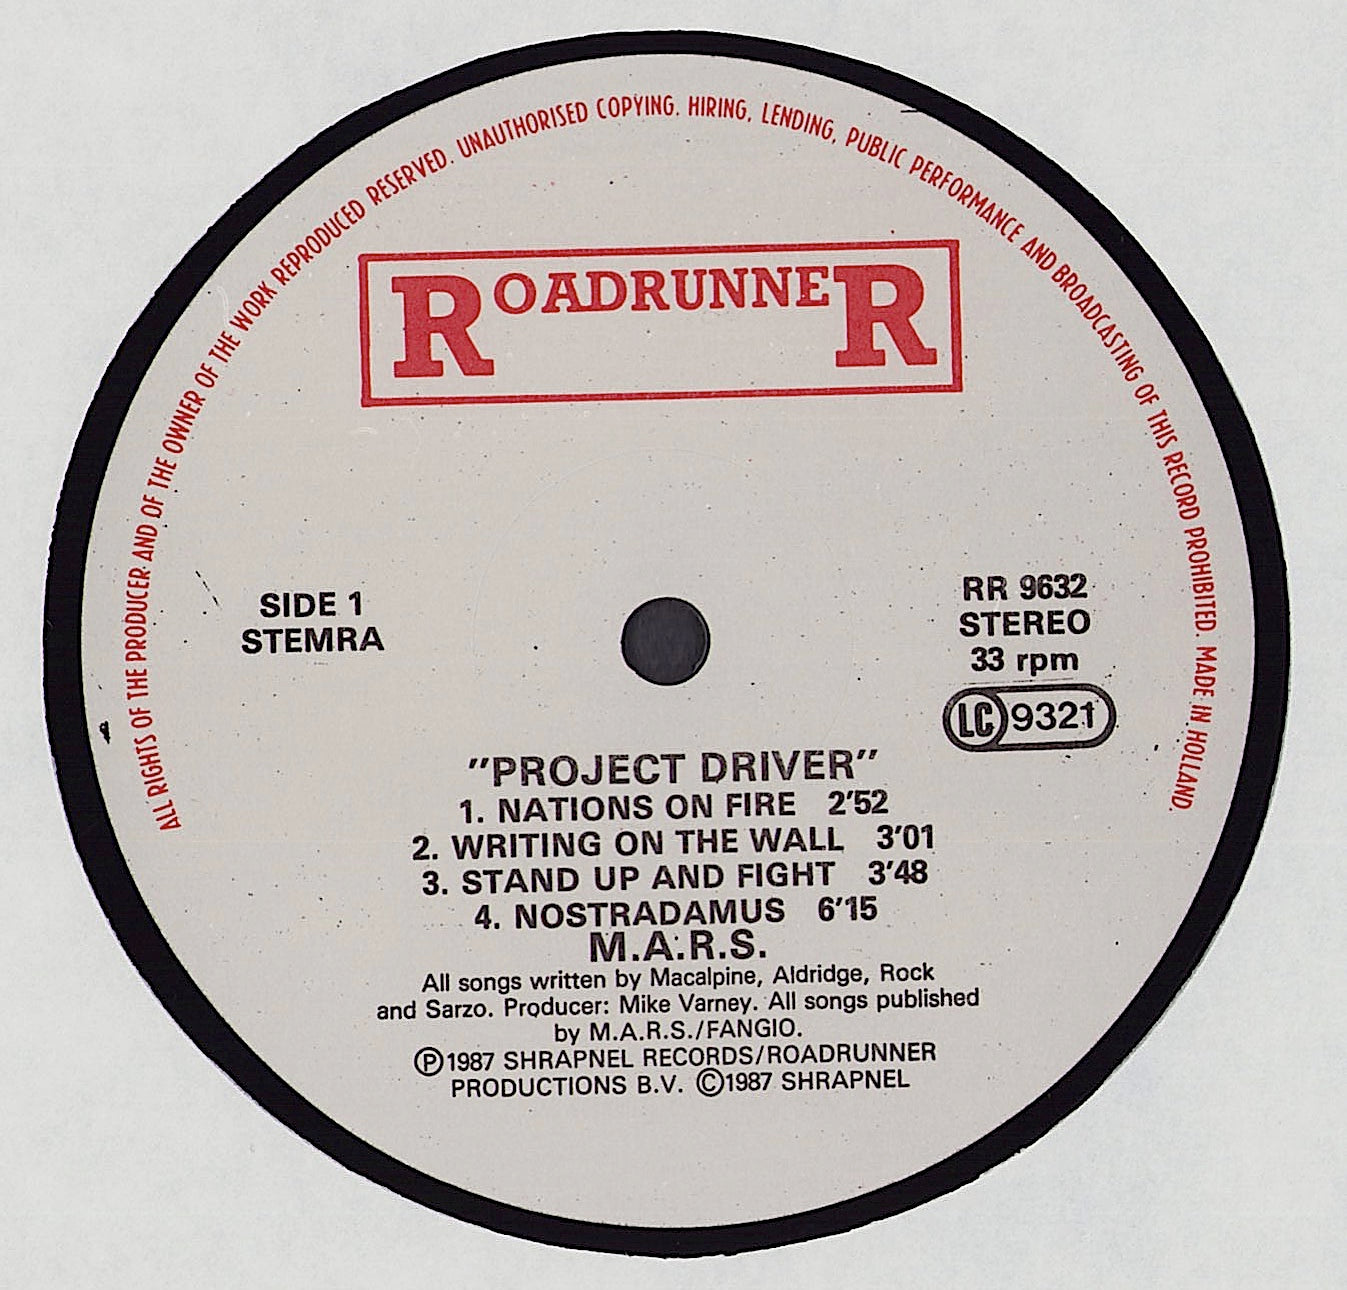 MacAlpine-Aldridge-Rock-Sarzo - Project: Driver Vinyl LP